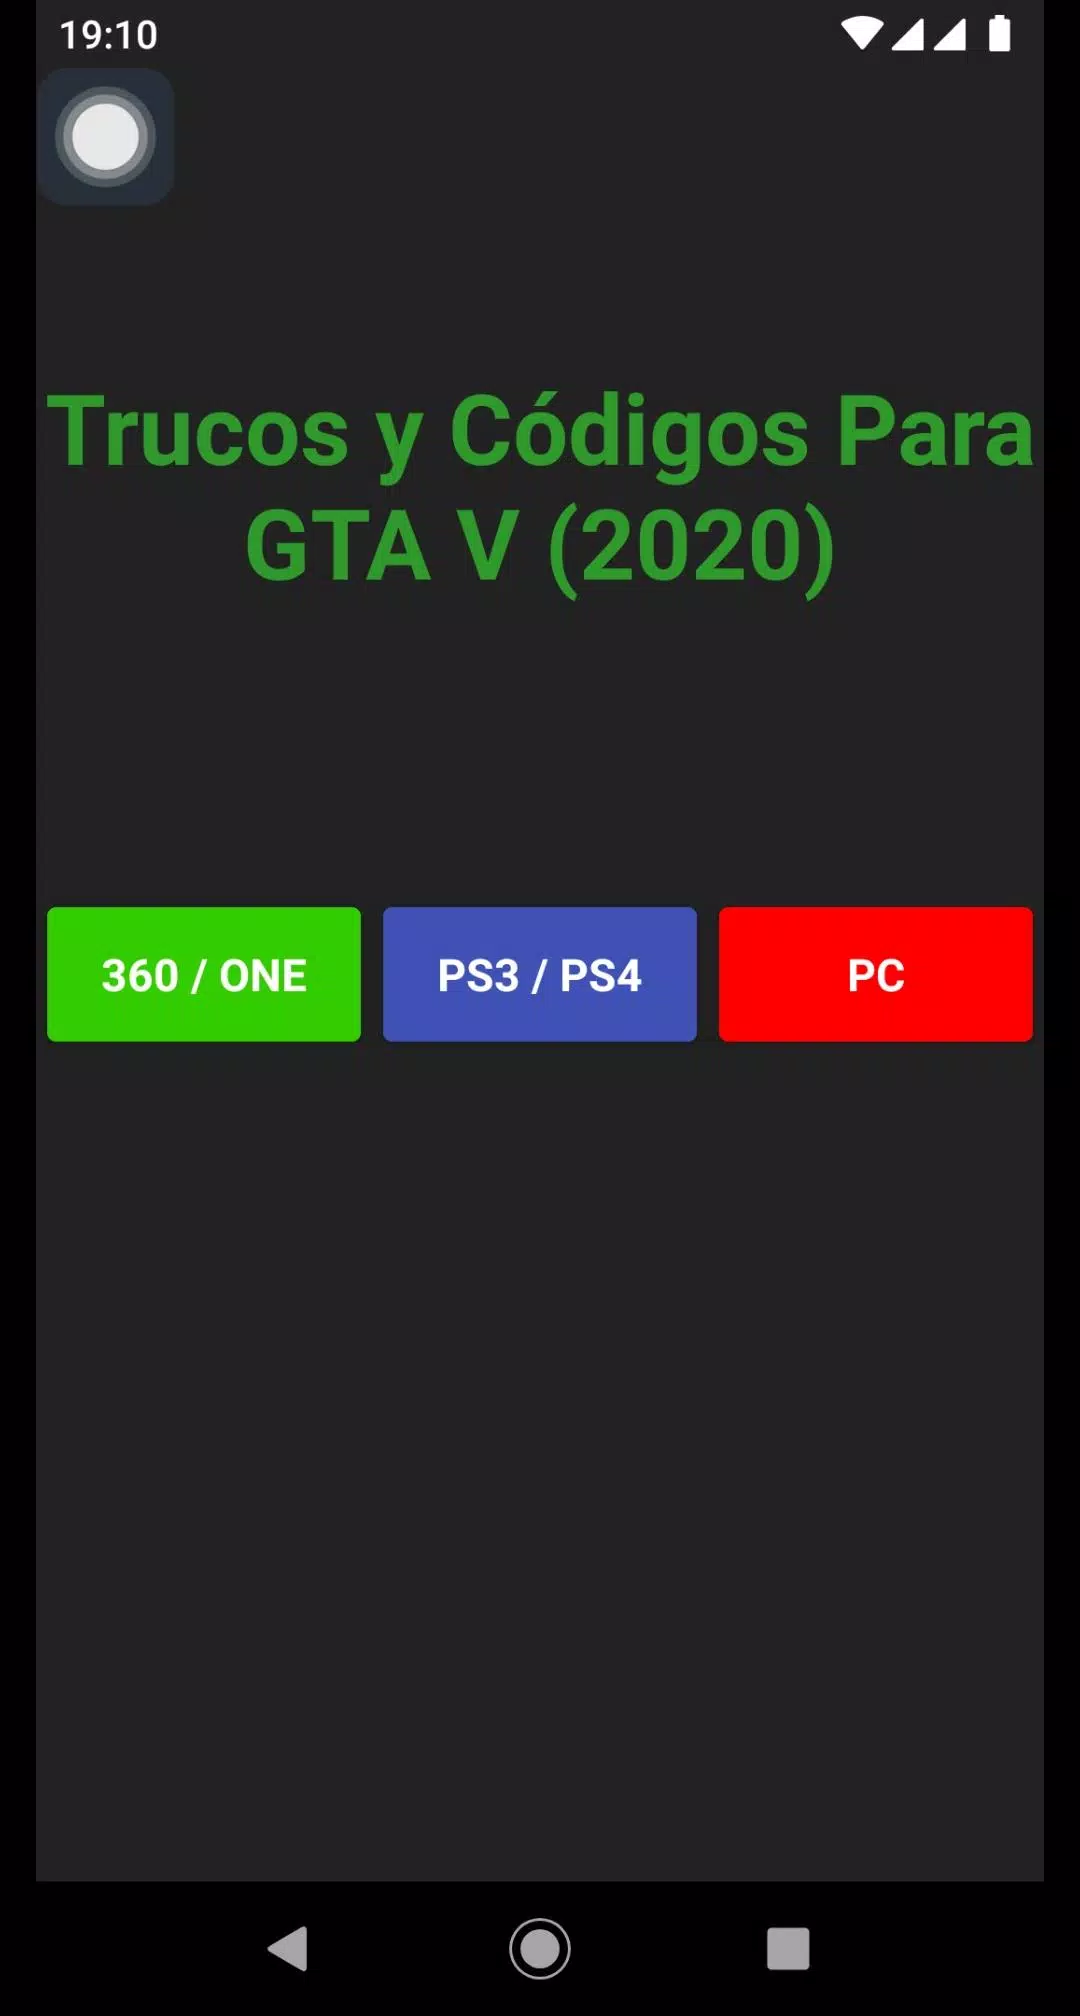 Download do APK de Trucos y Códigos para GTA V (2020) para Android